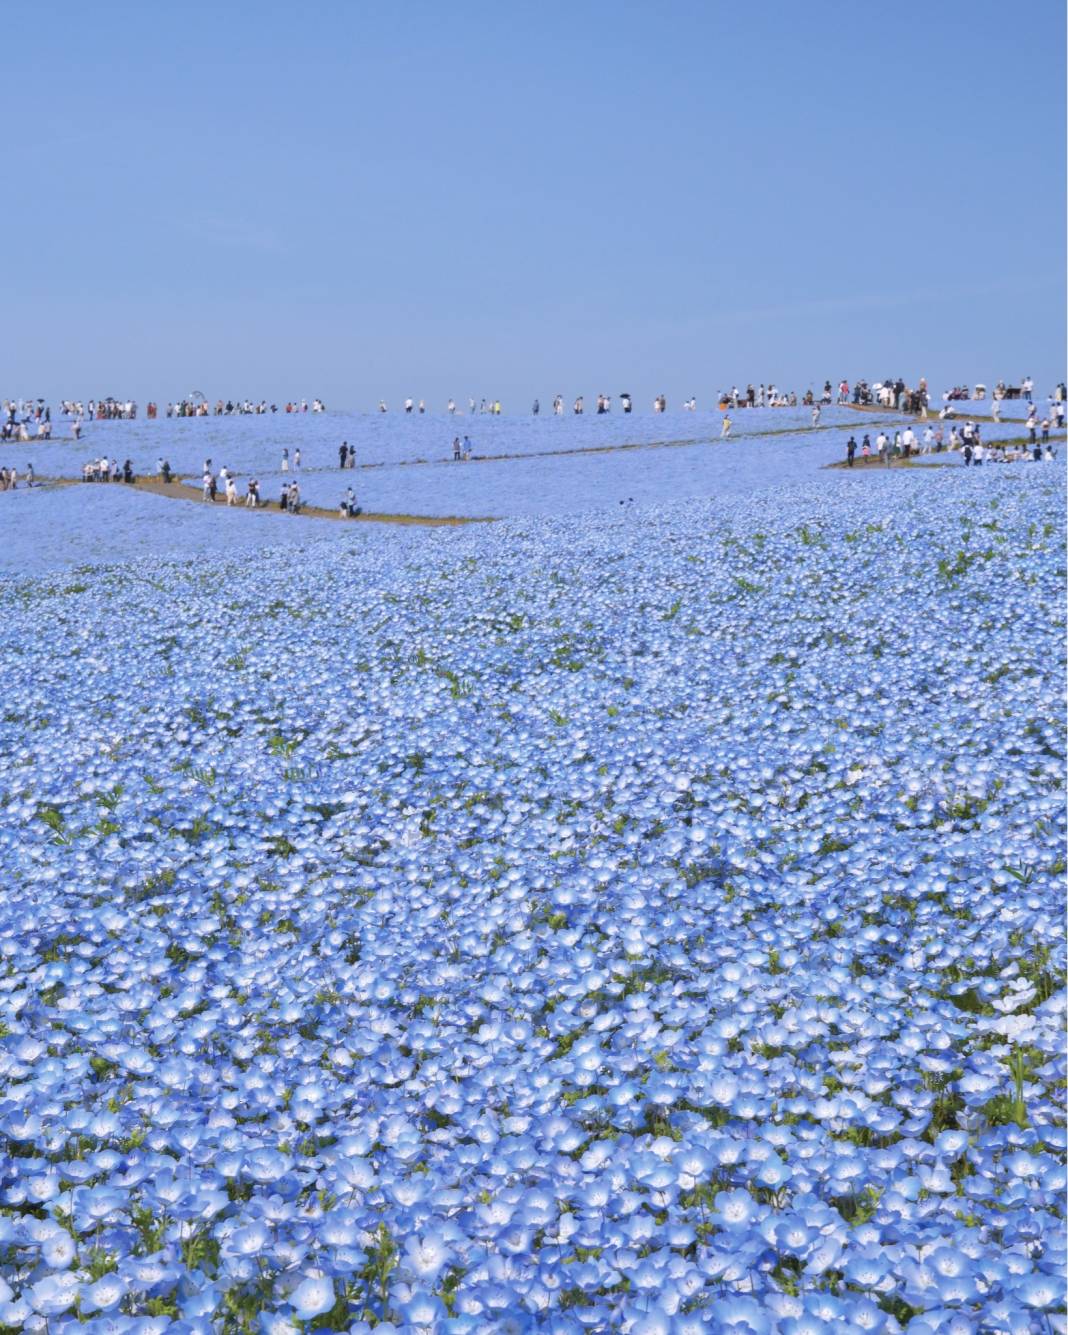 Japon parkında görsel şölen: Mavi özlem çiçeğinin mevsimi geldi 1